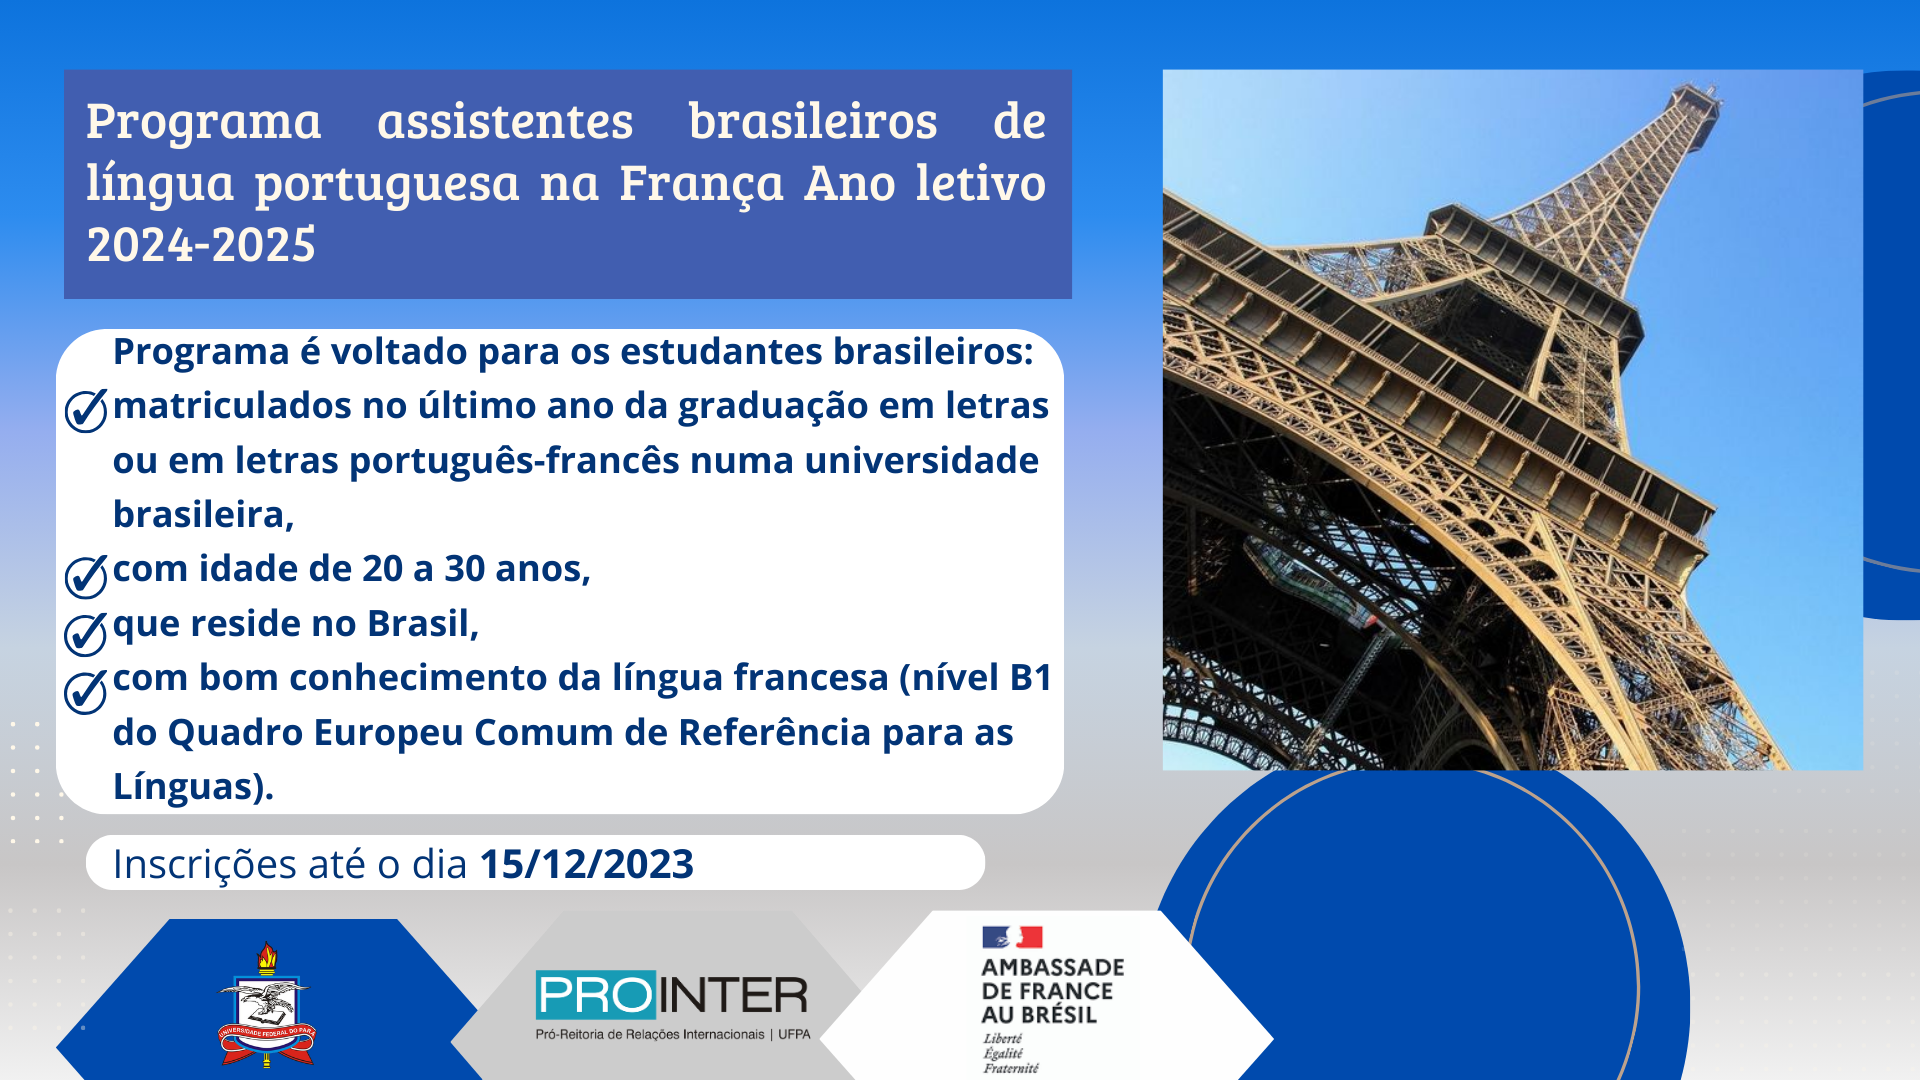 Programa assistentes brasileiros de língua portuguesa na França Ano letivo 2024-2025